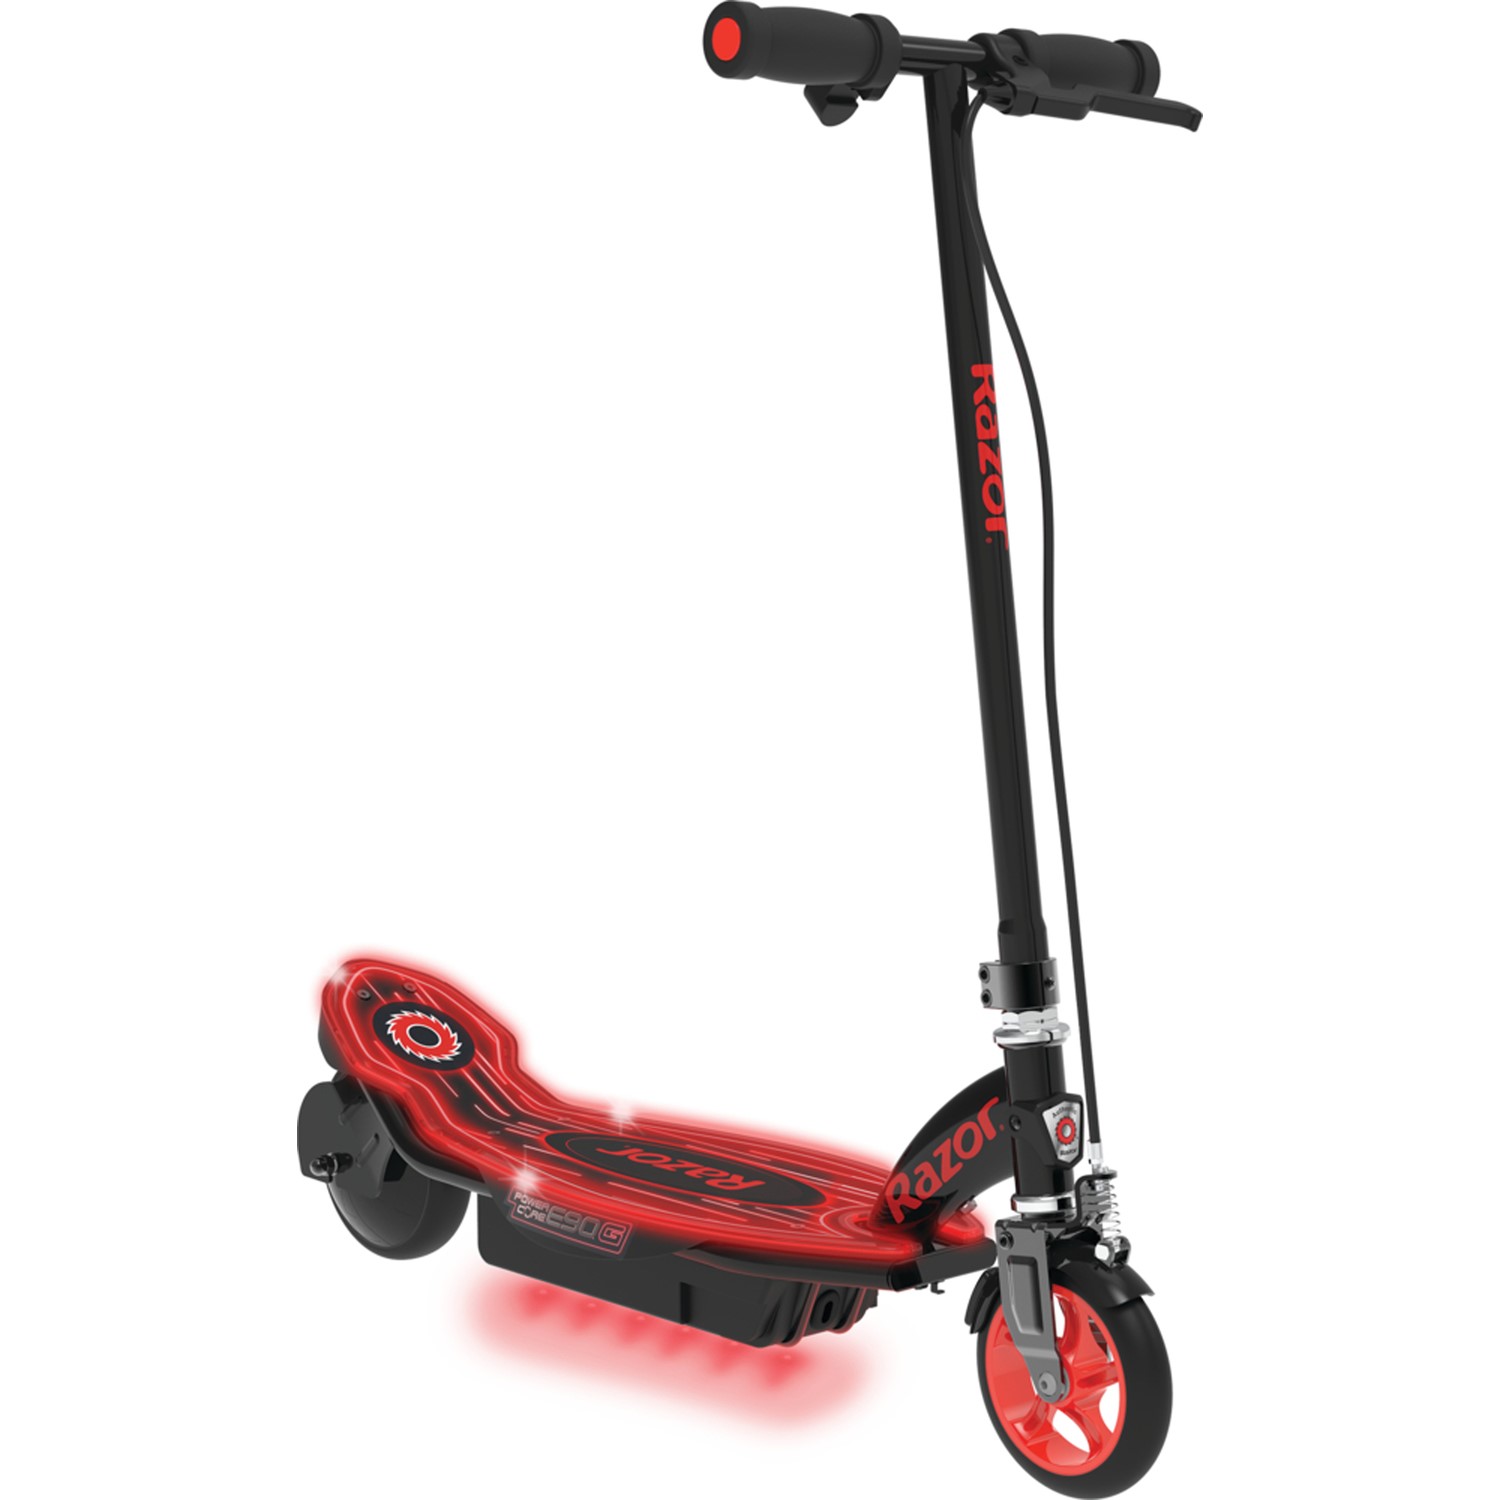 razor e90 electric scooter